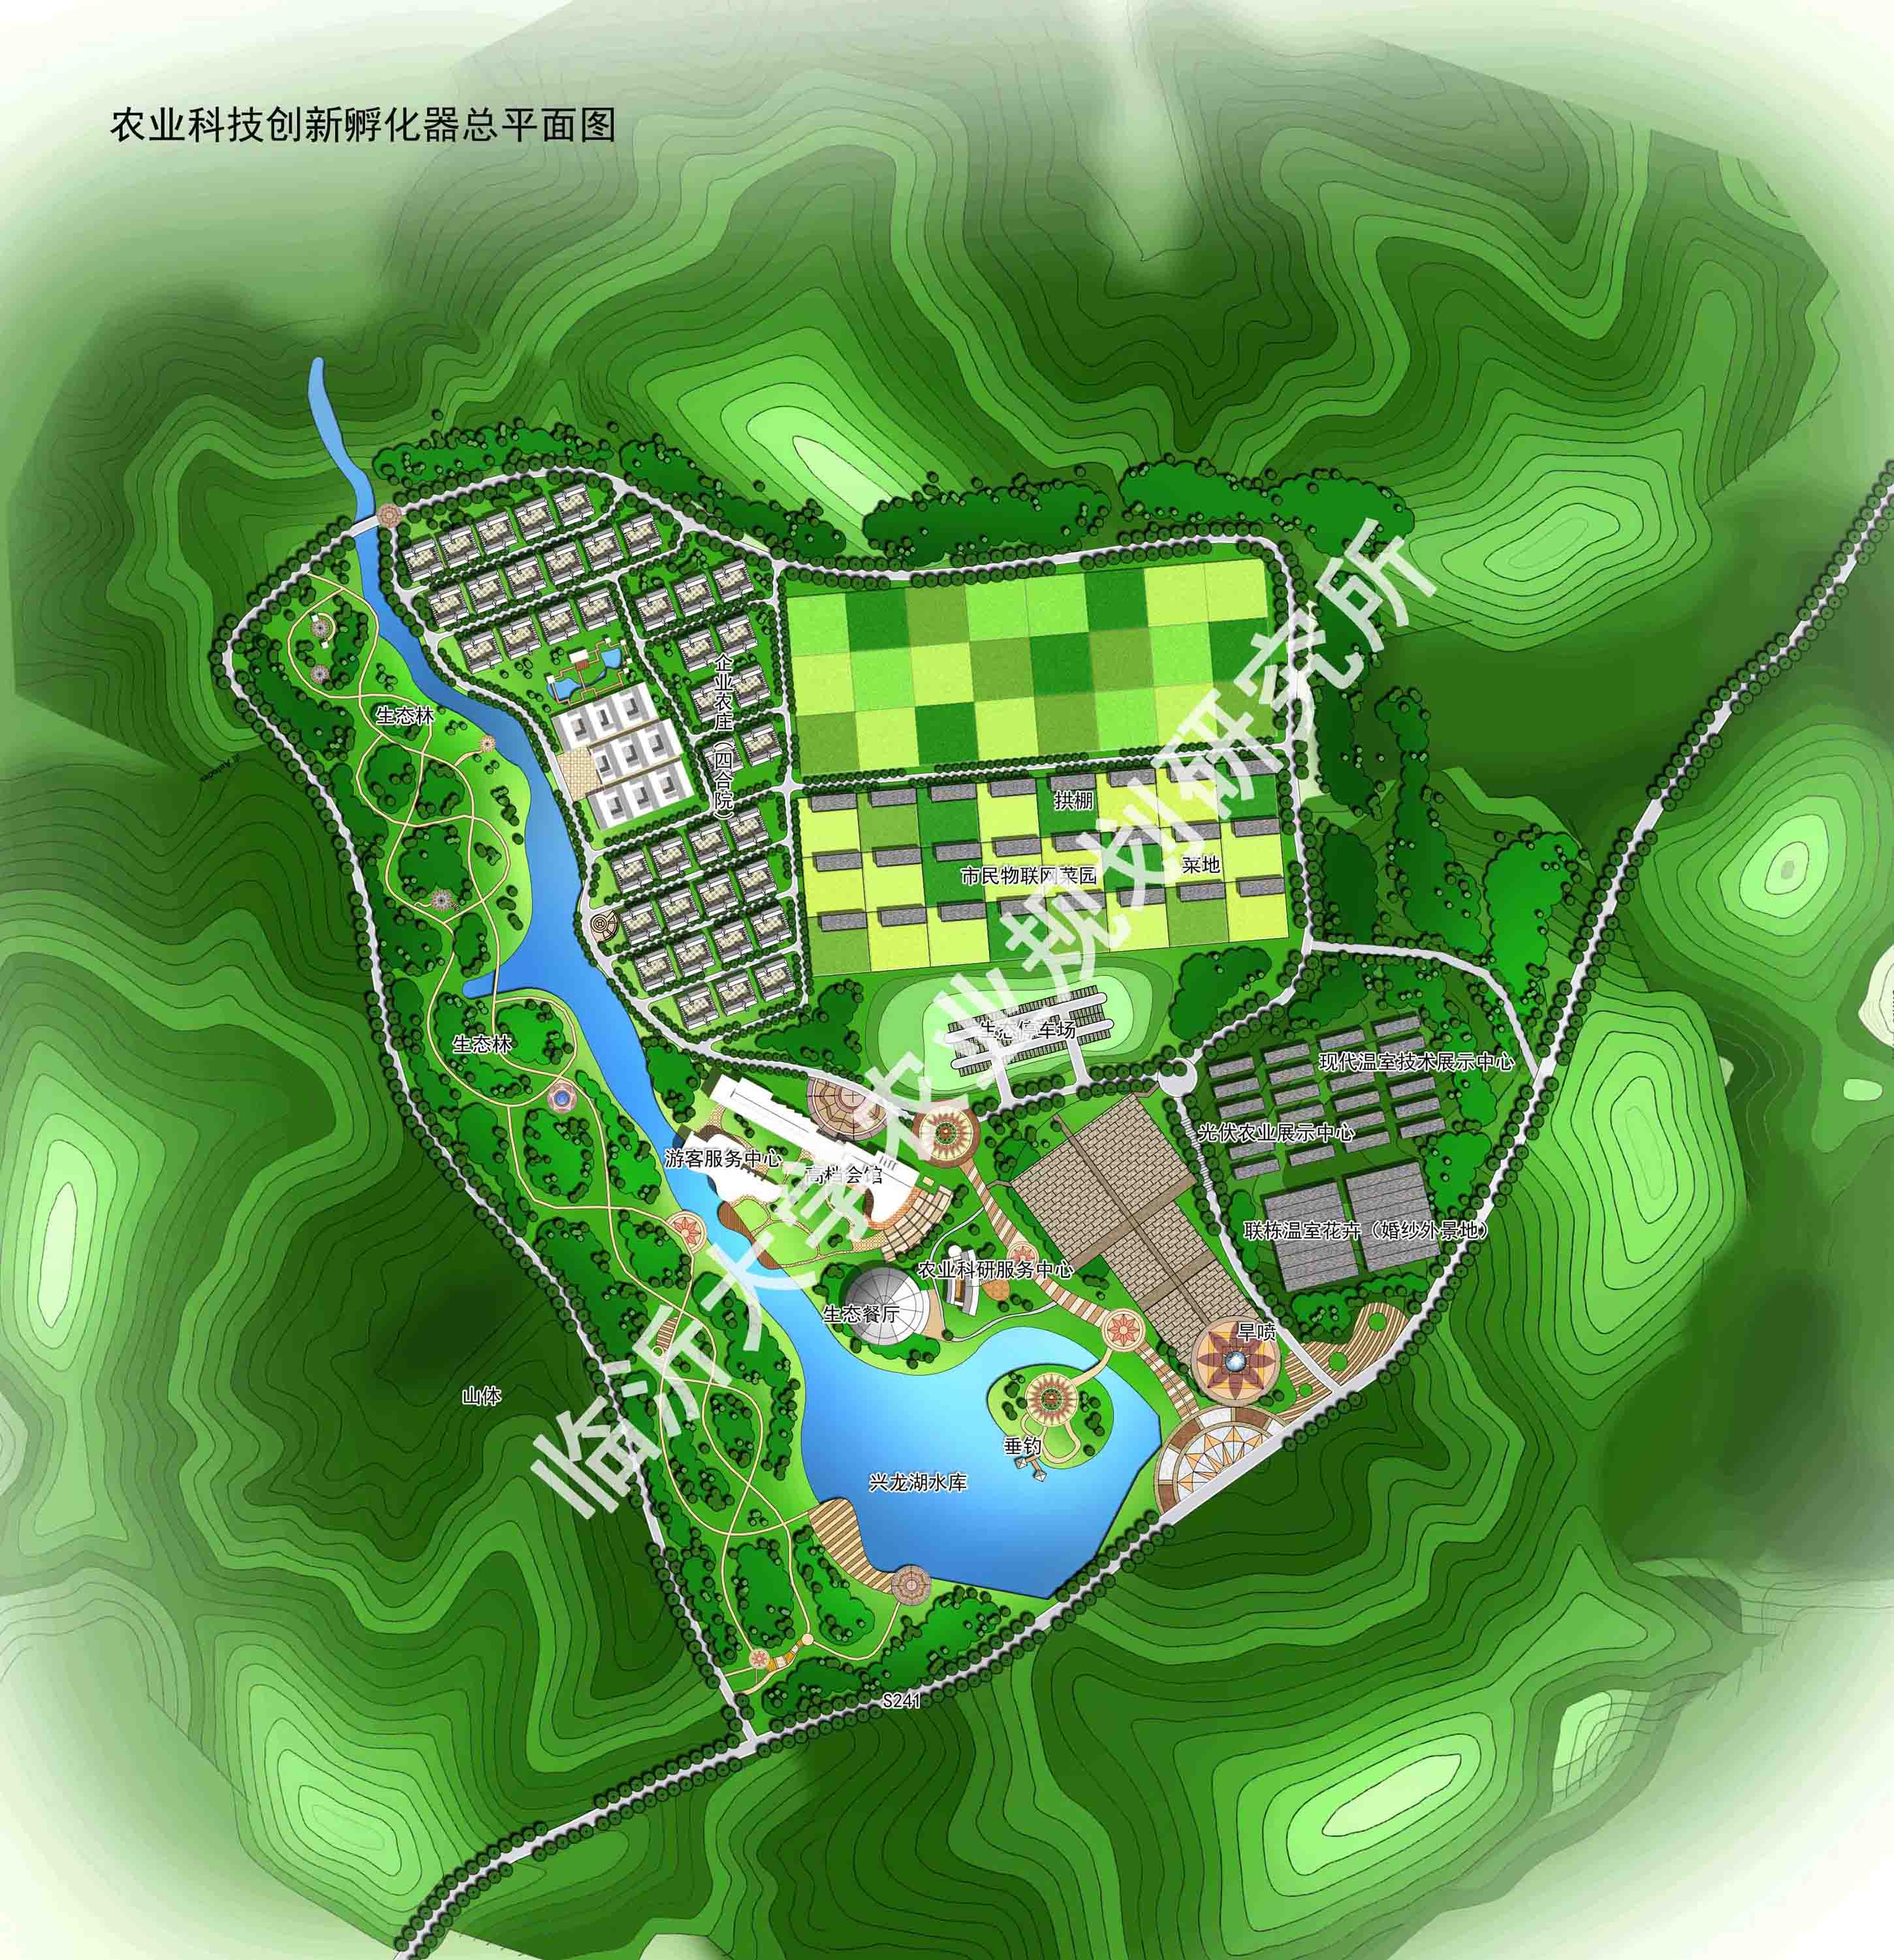 河北团山红生态农业产业园区总体规划——核心区总平面图